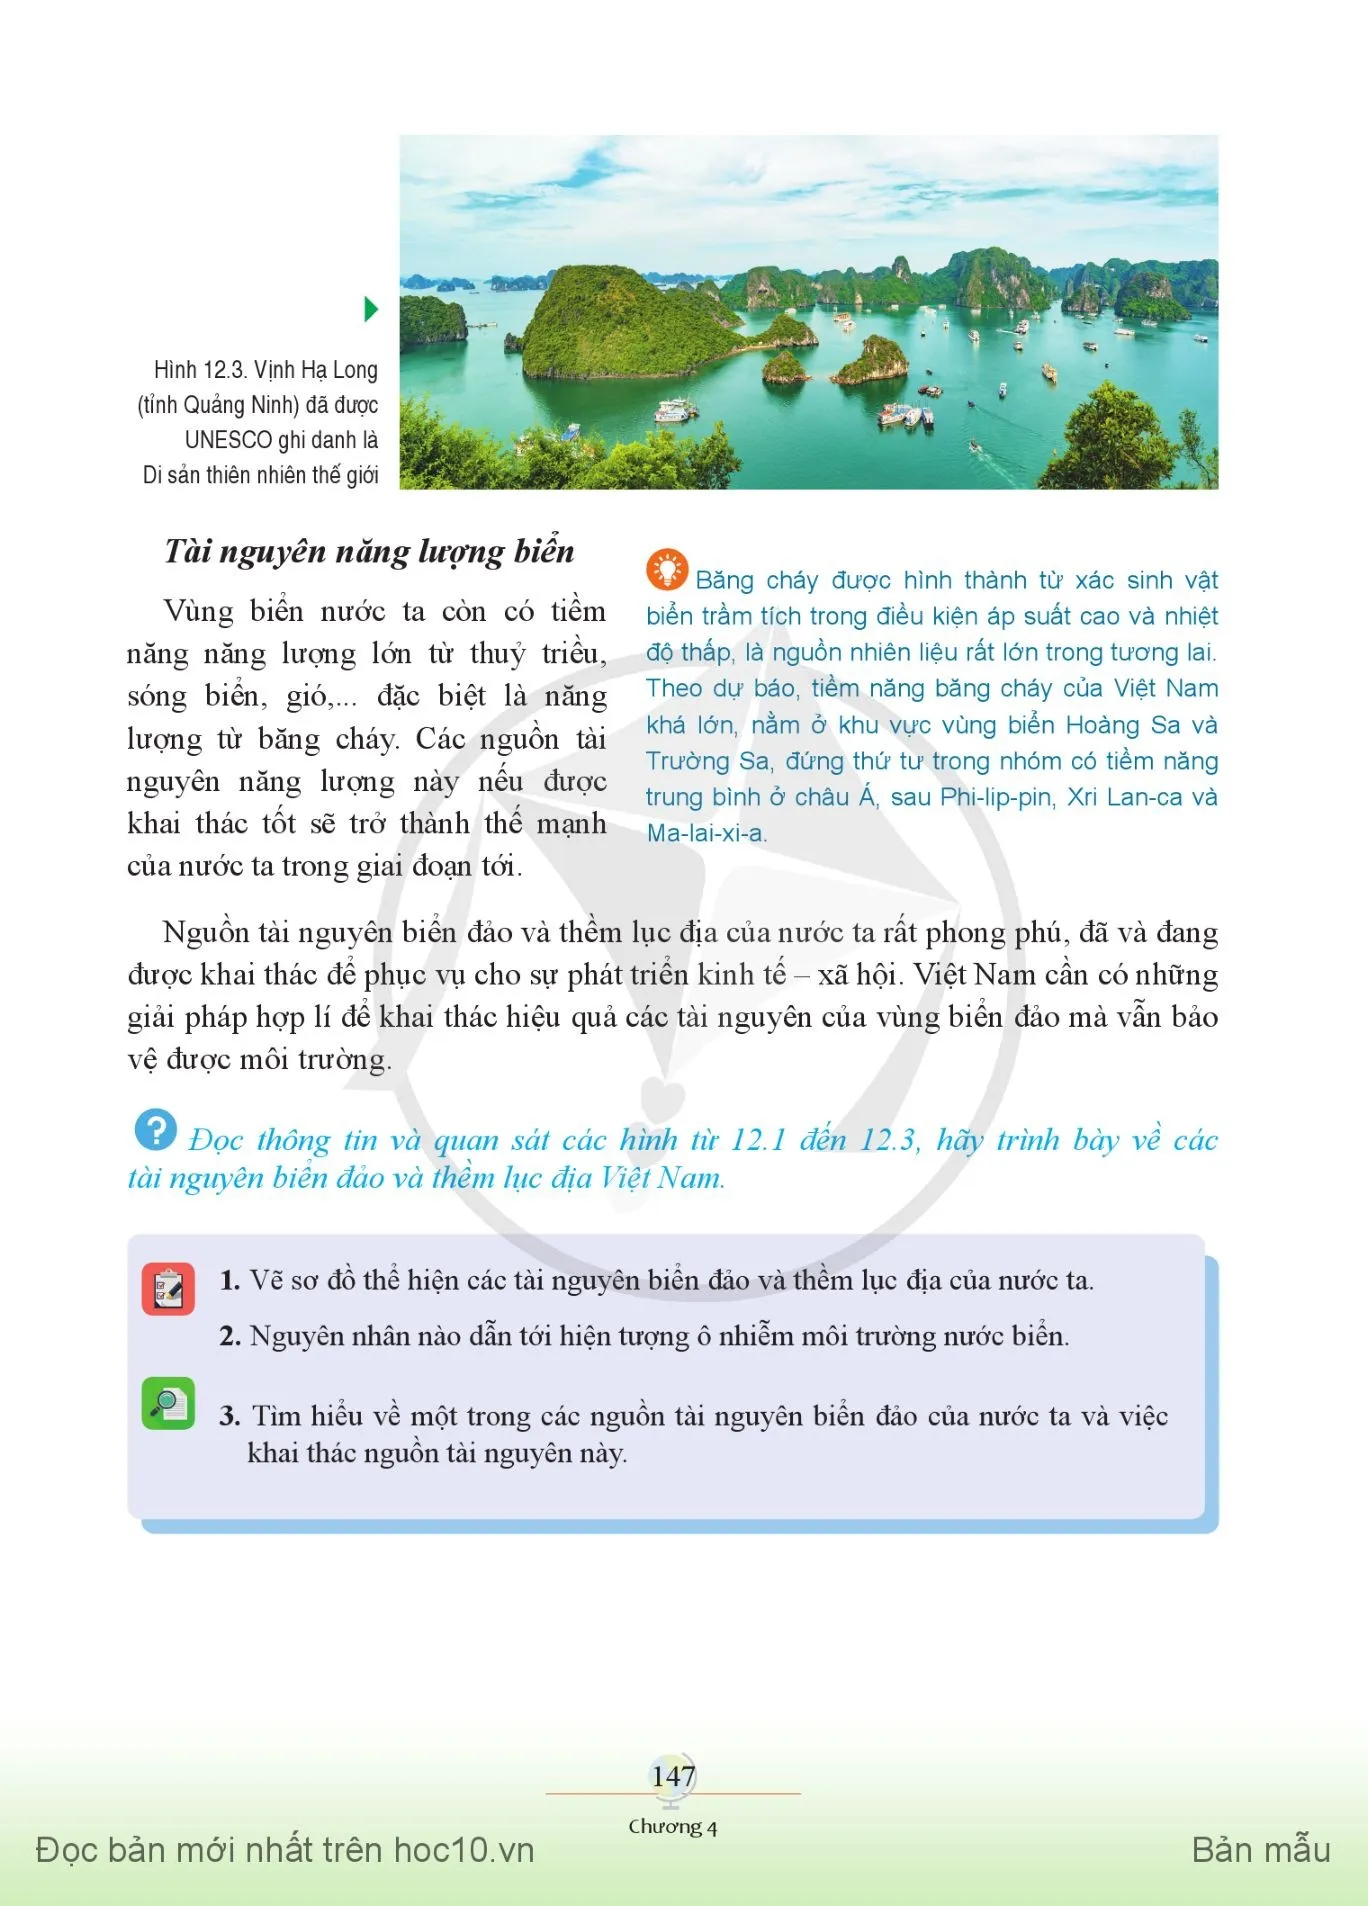 Bài 12. Môi trường và tài nguyên biển đảo Việt Nam